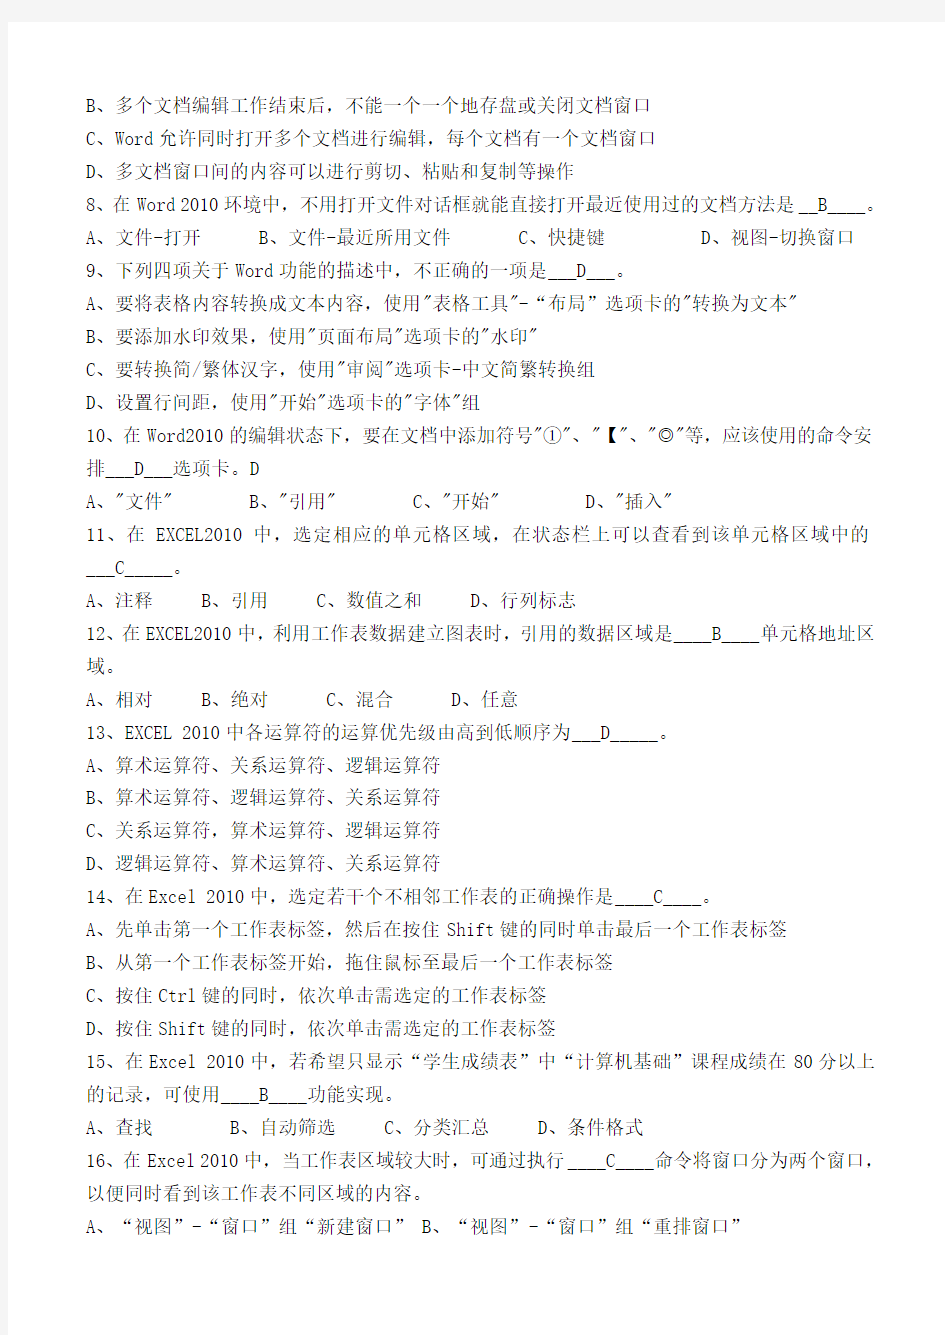 江南大学现代远程教育2013年下半年第二阶段测试计算机应用基础-第3~5章